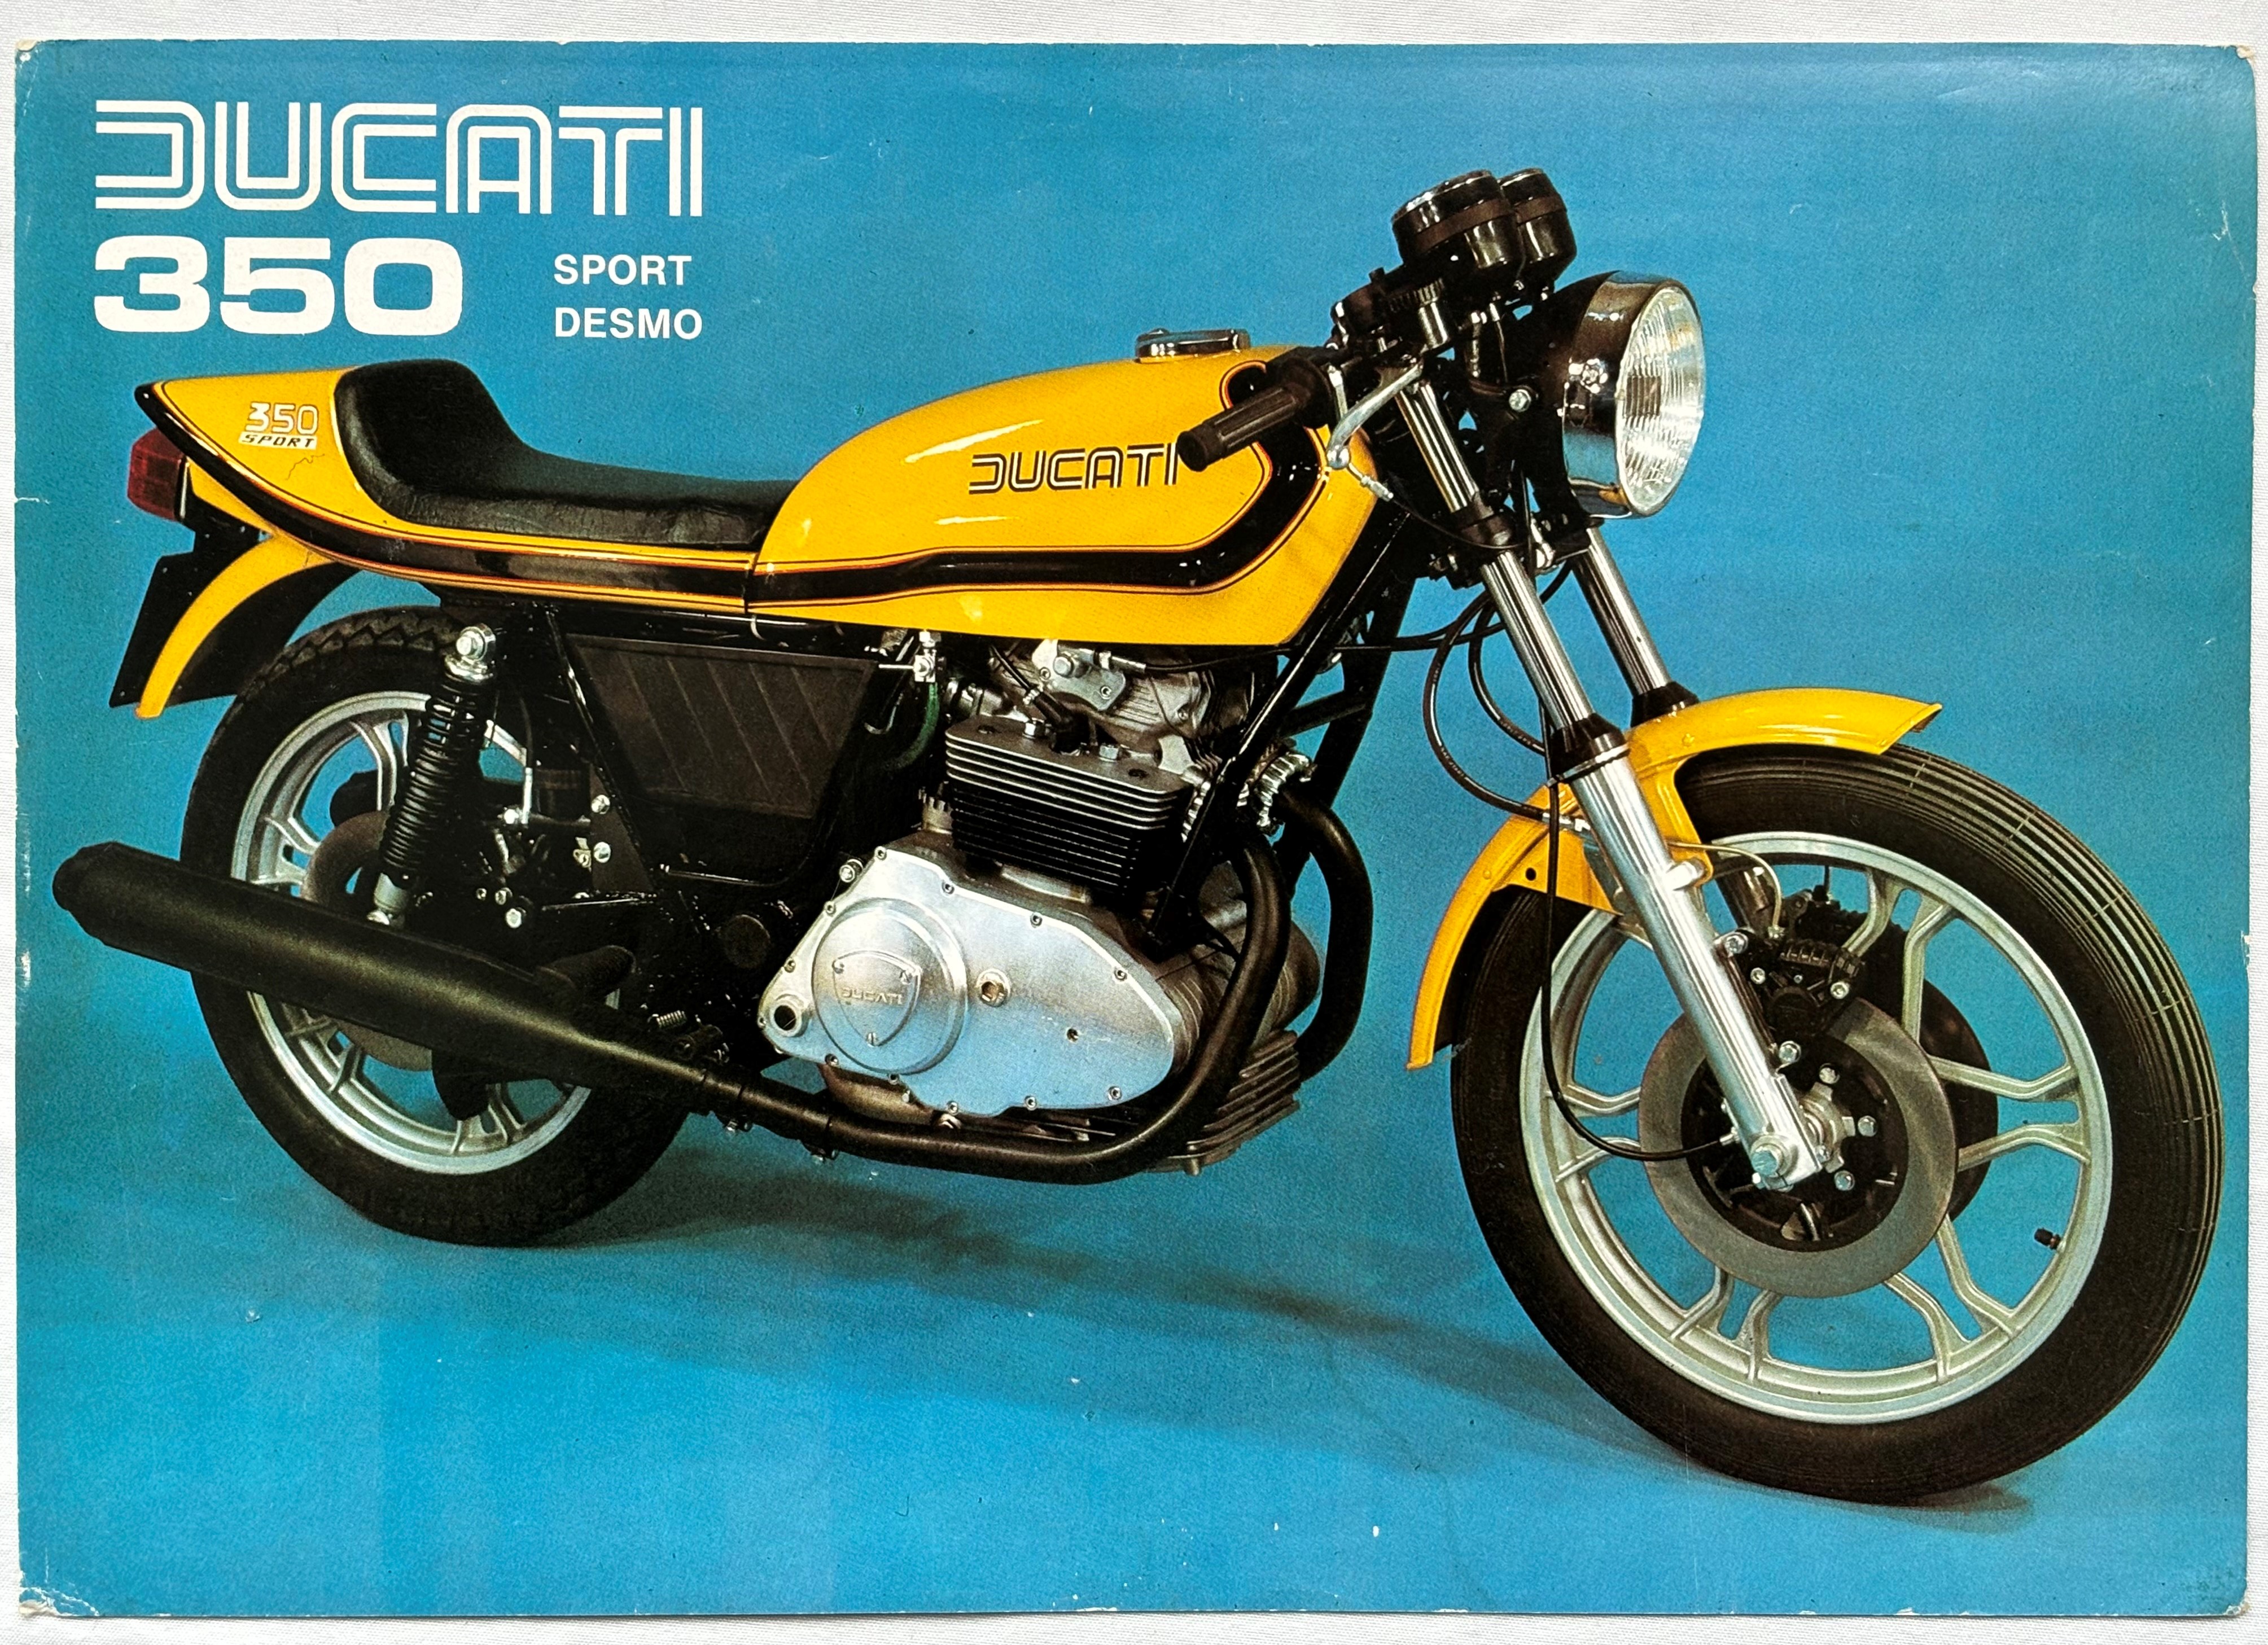 Brochure - Ducati 350 Sport Desmo